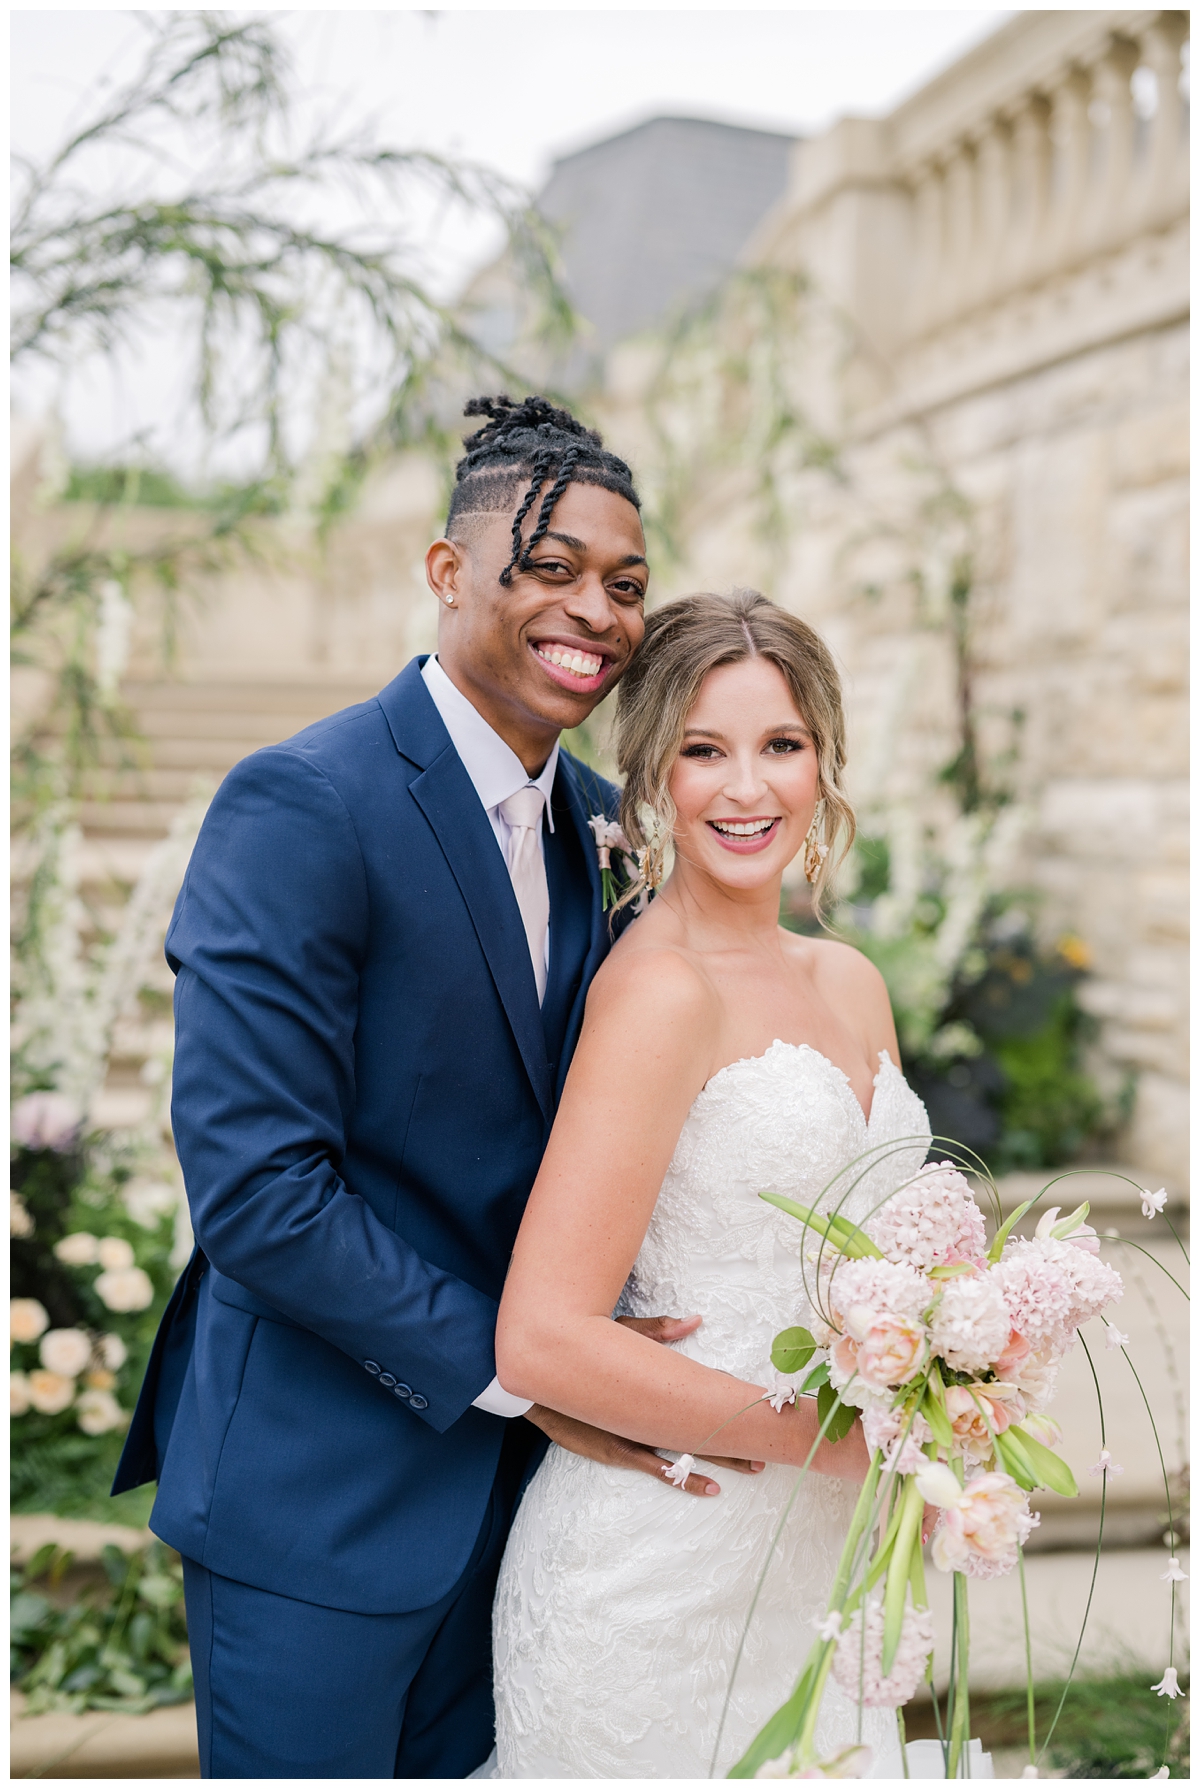 Wedding Photographer in Texas for interracial couples mixed race 